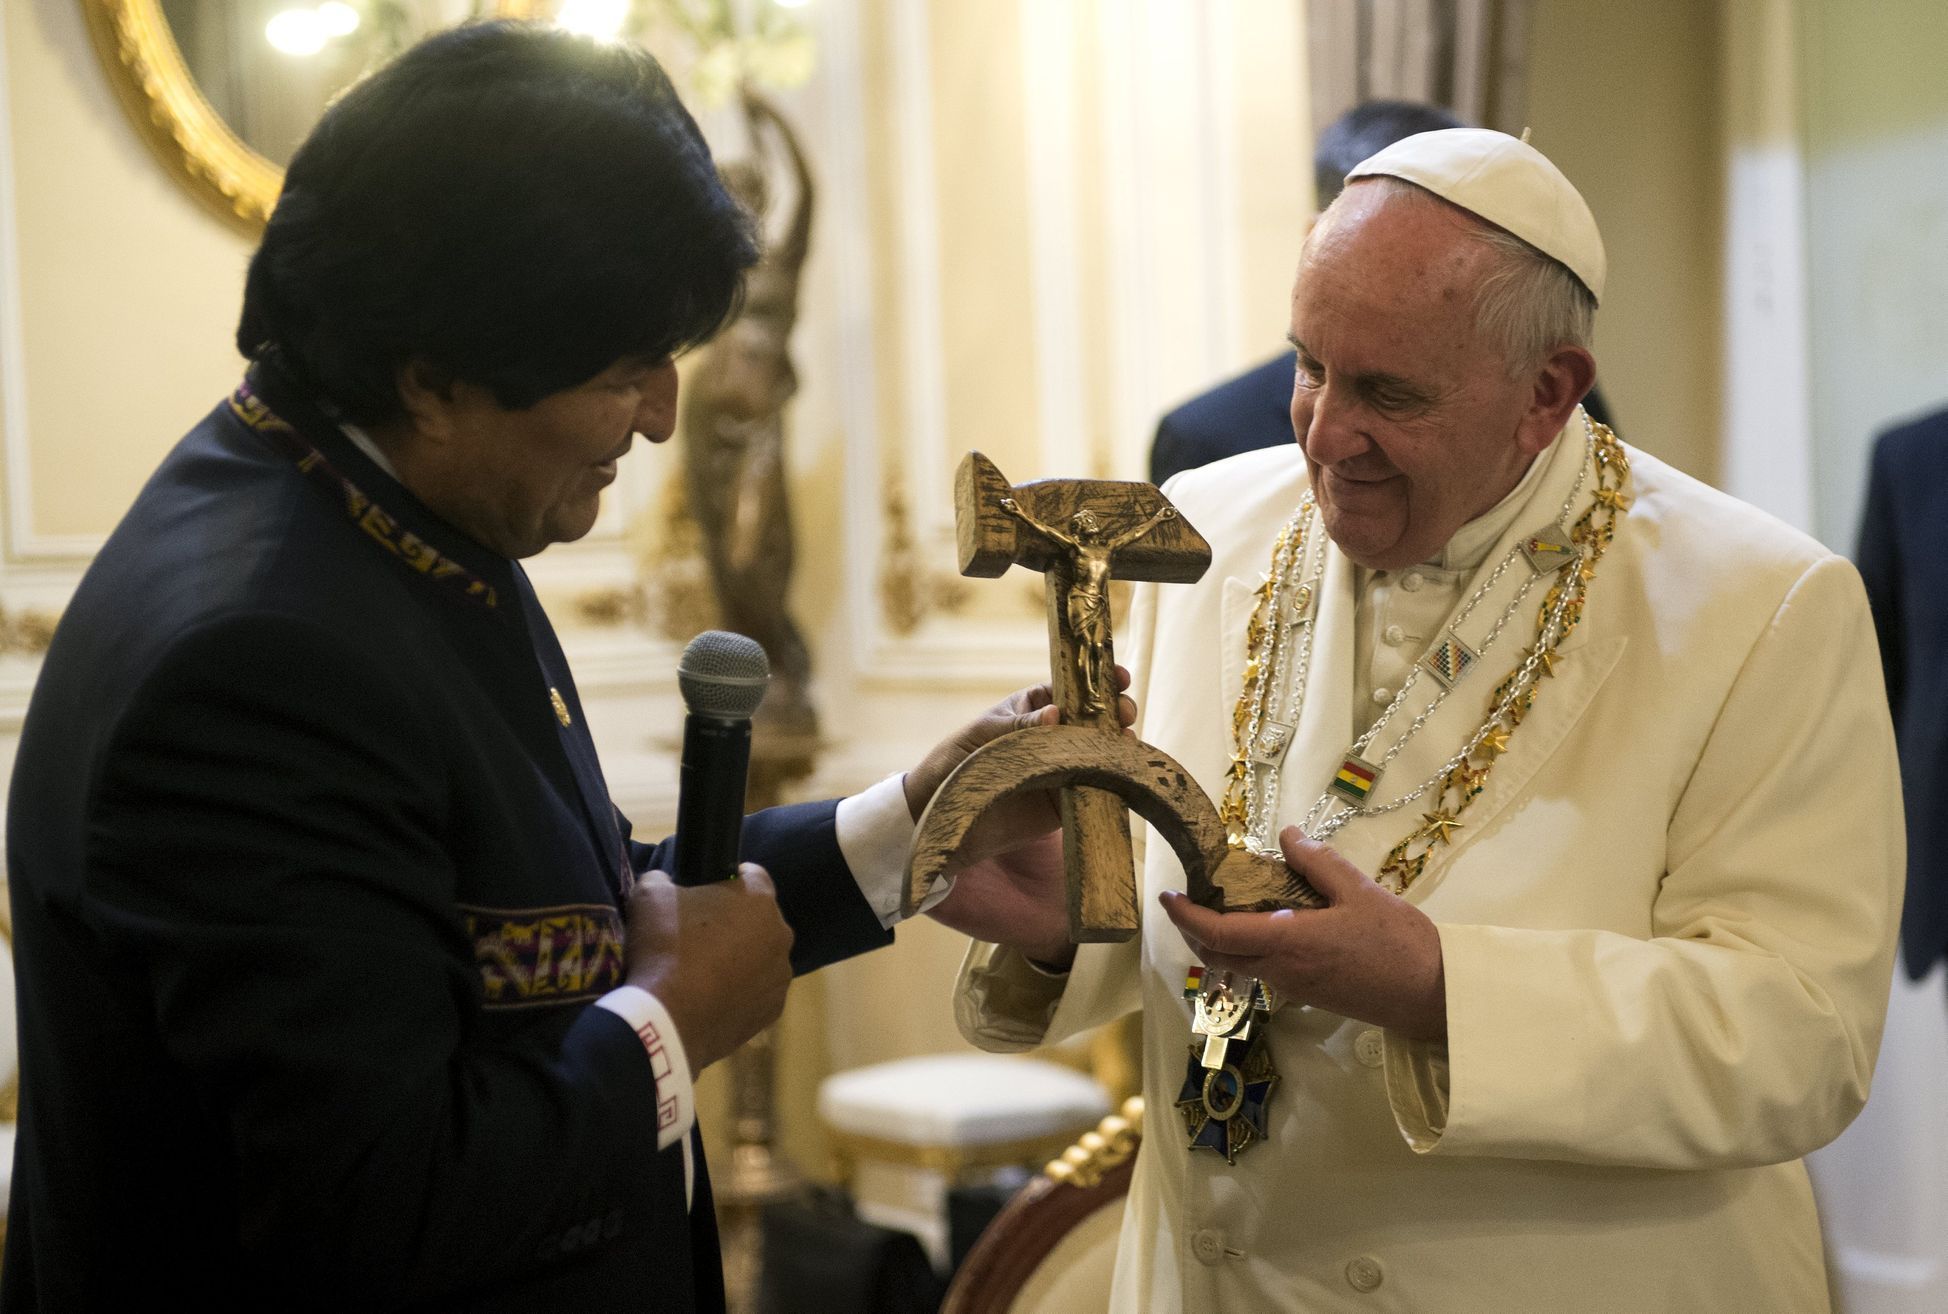 Evo Morales papež František Pope Francis receives a gift from Bolivian President Evo Morales in La Paz